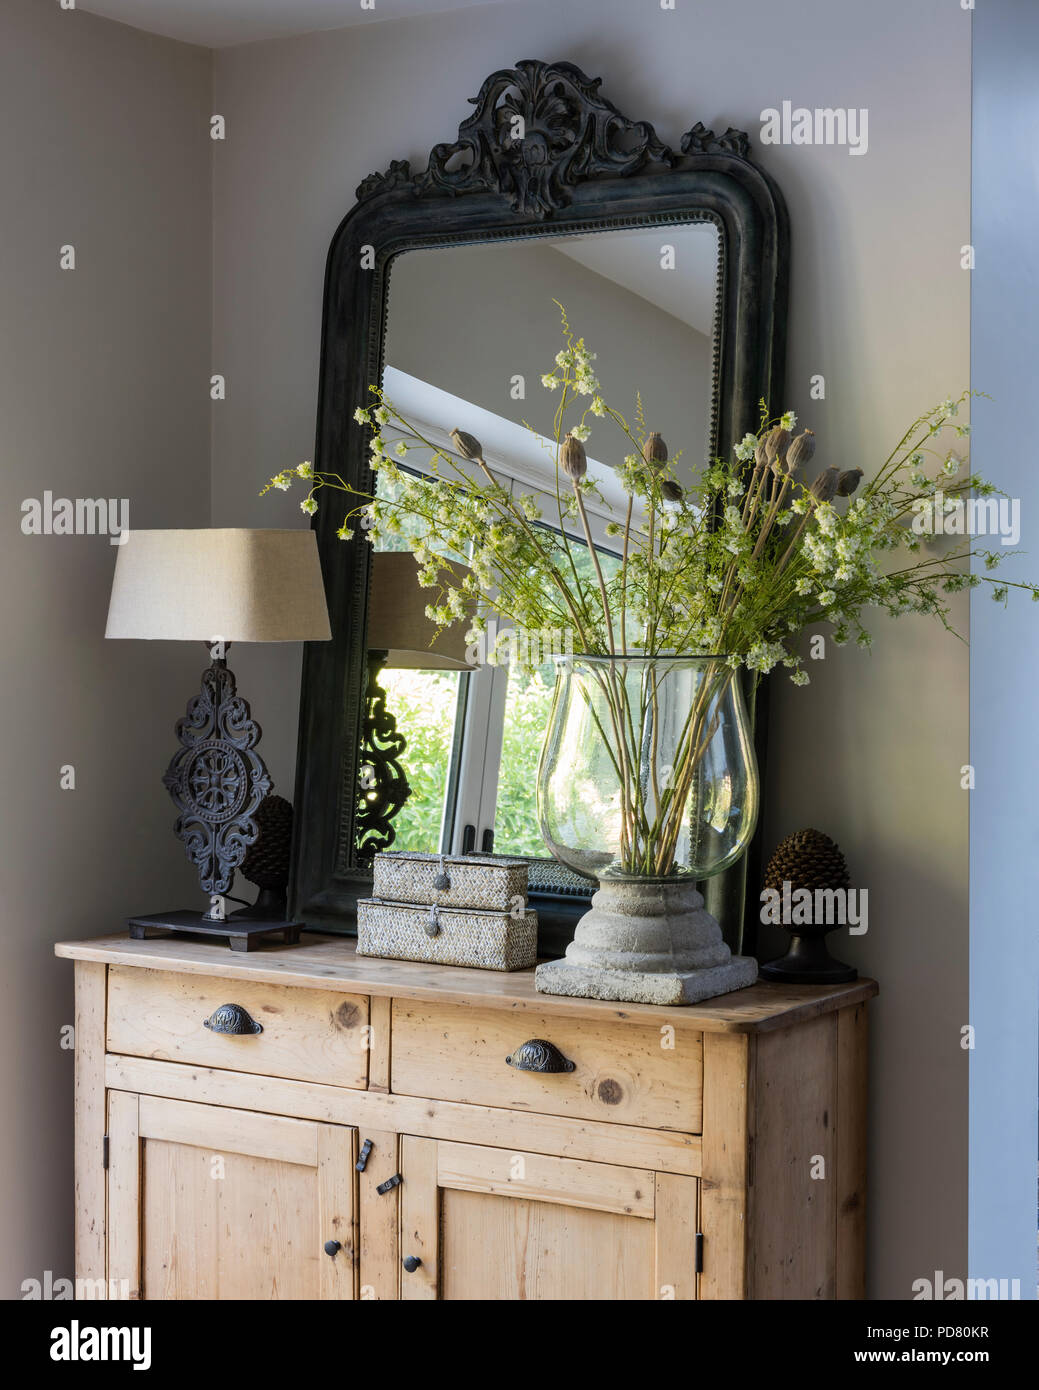 Grand miroir en bois sur la commode avec une lampe de table et grand vase en verre Banque D'Images